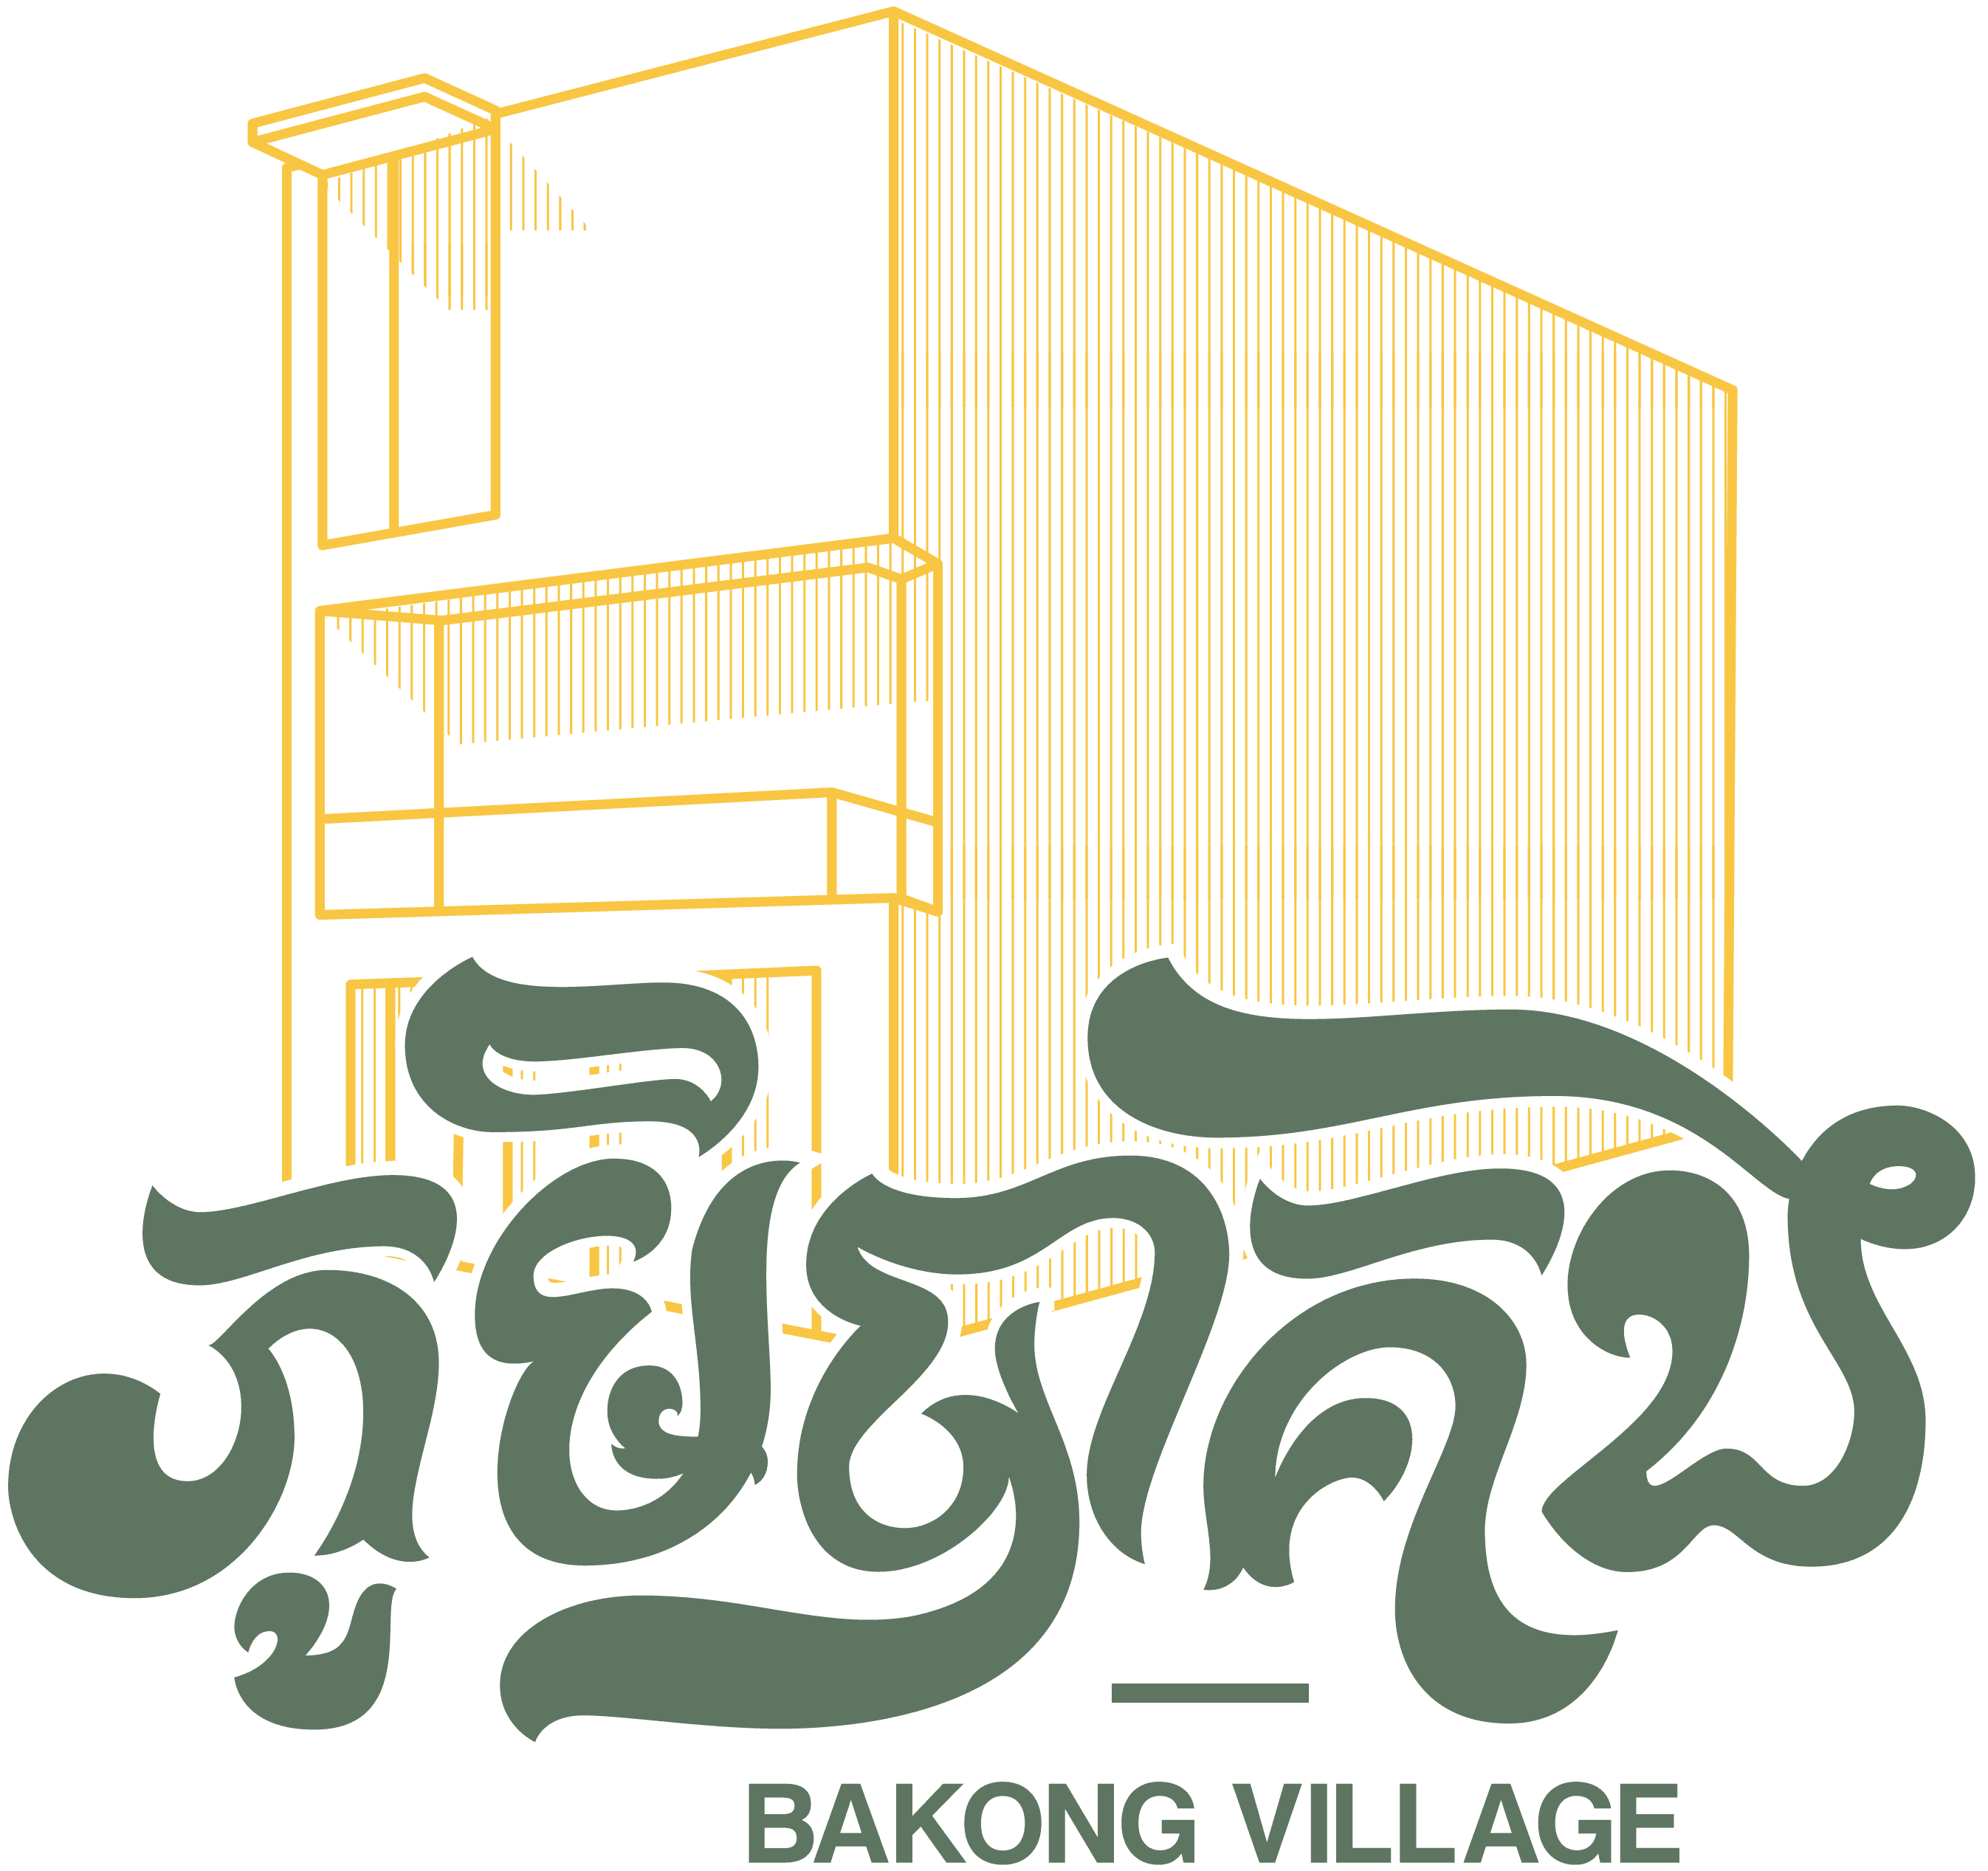 Bakong Village